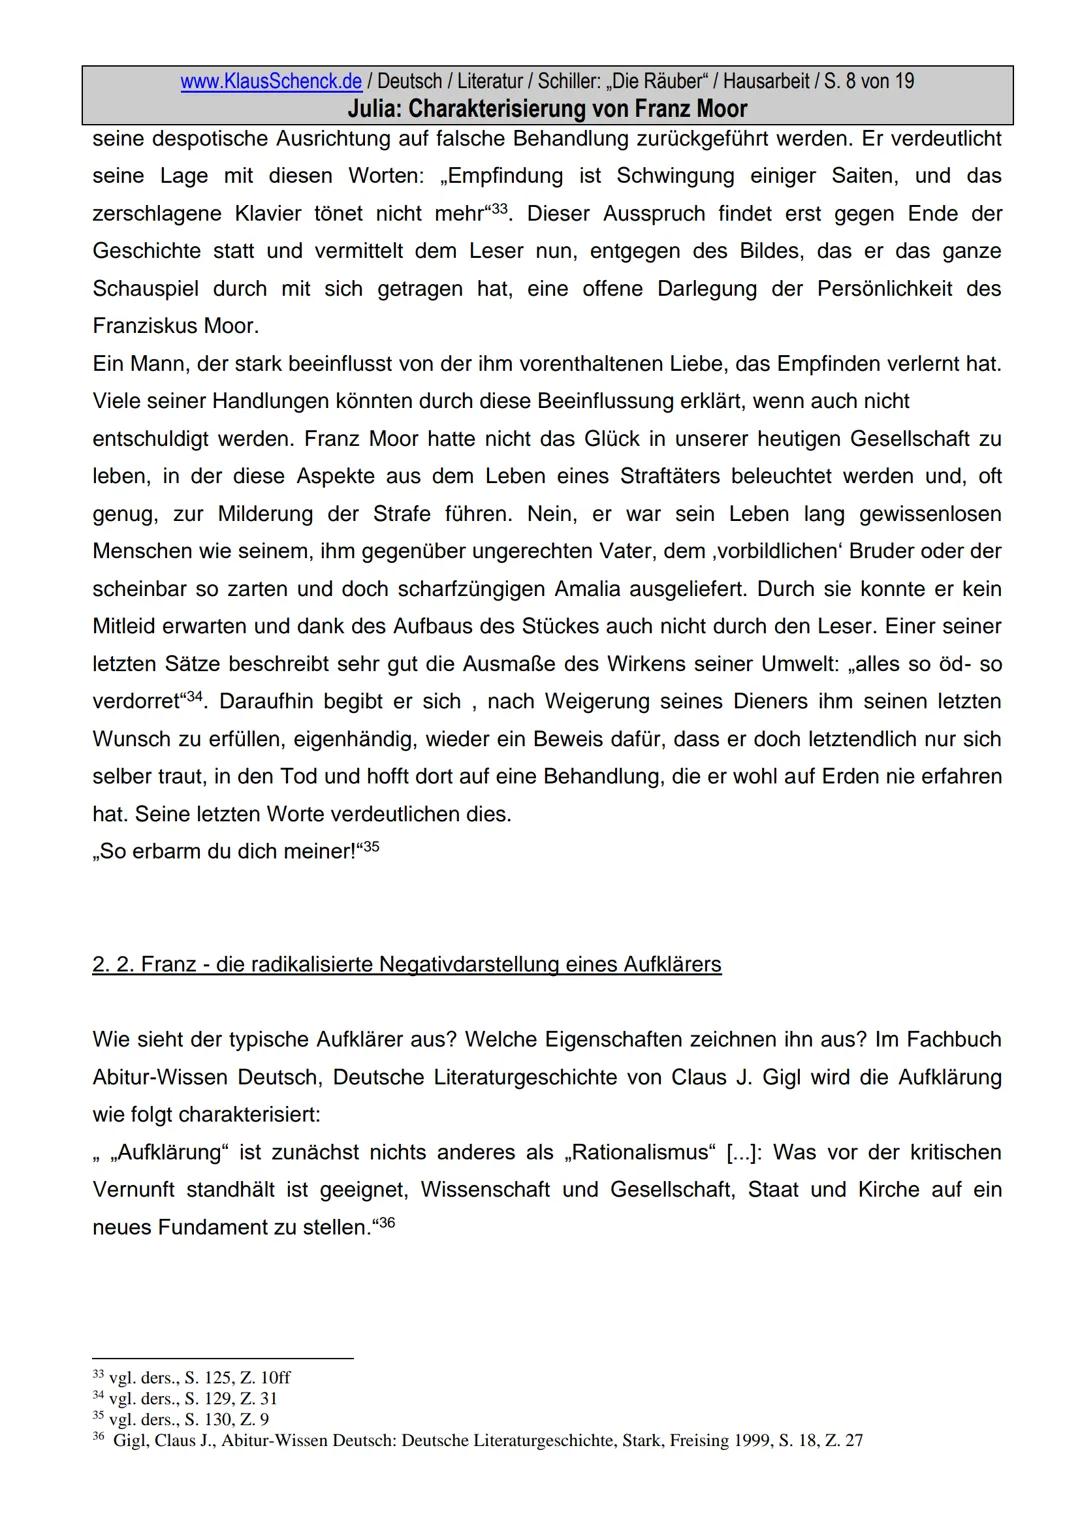 www.KlausSchenck.de / Deutsch / Literatur / Schiller: „Die Räuber" / Hausarbeit / S. 2 von 19
Julia: Charakterisierung von Franz Moor
Inhalt